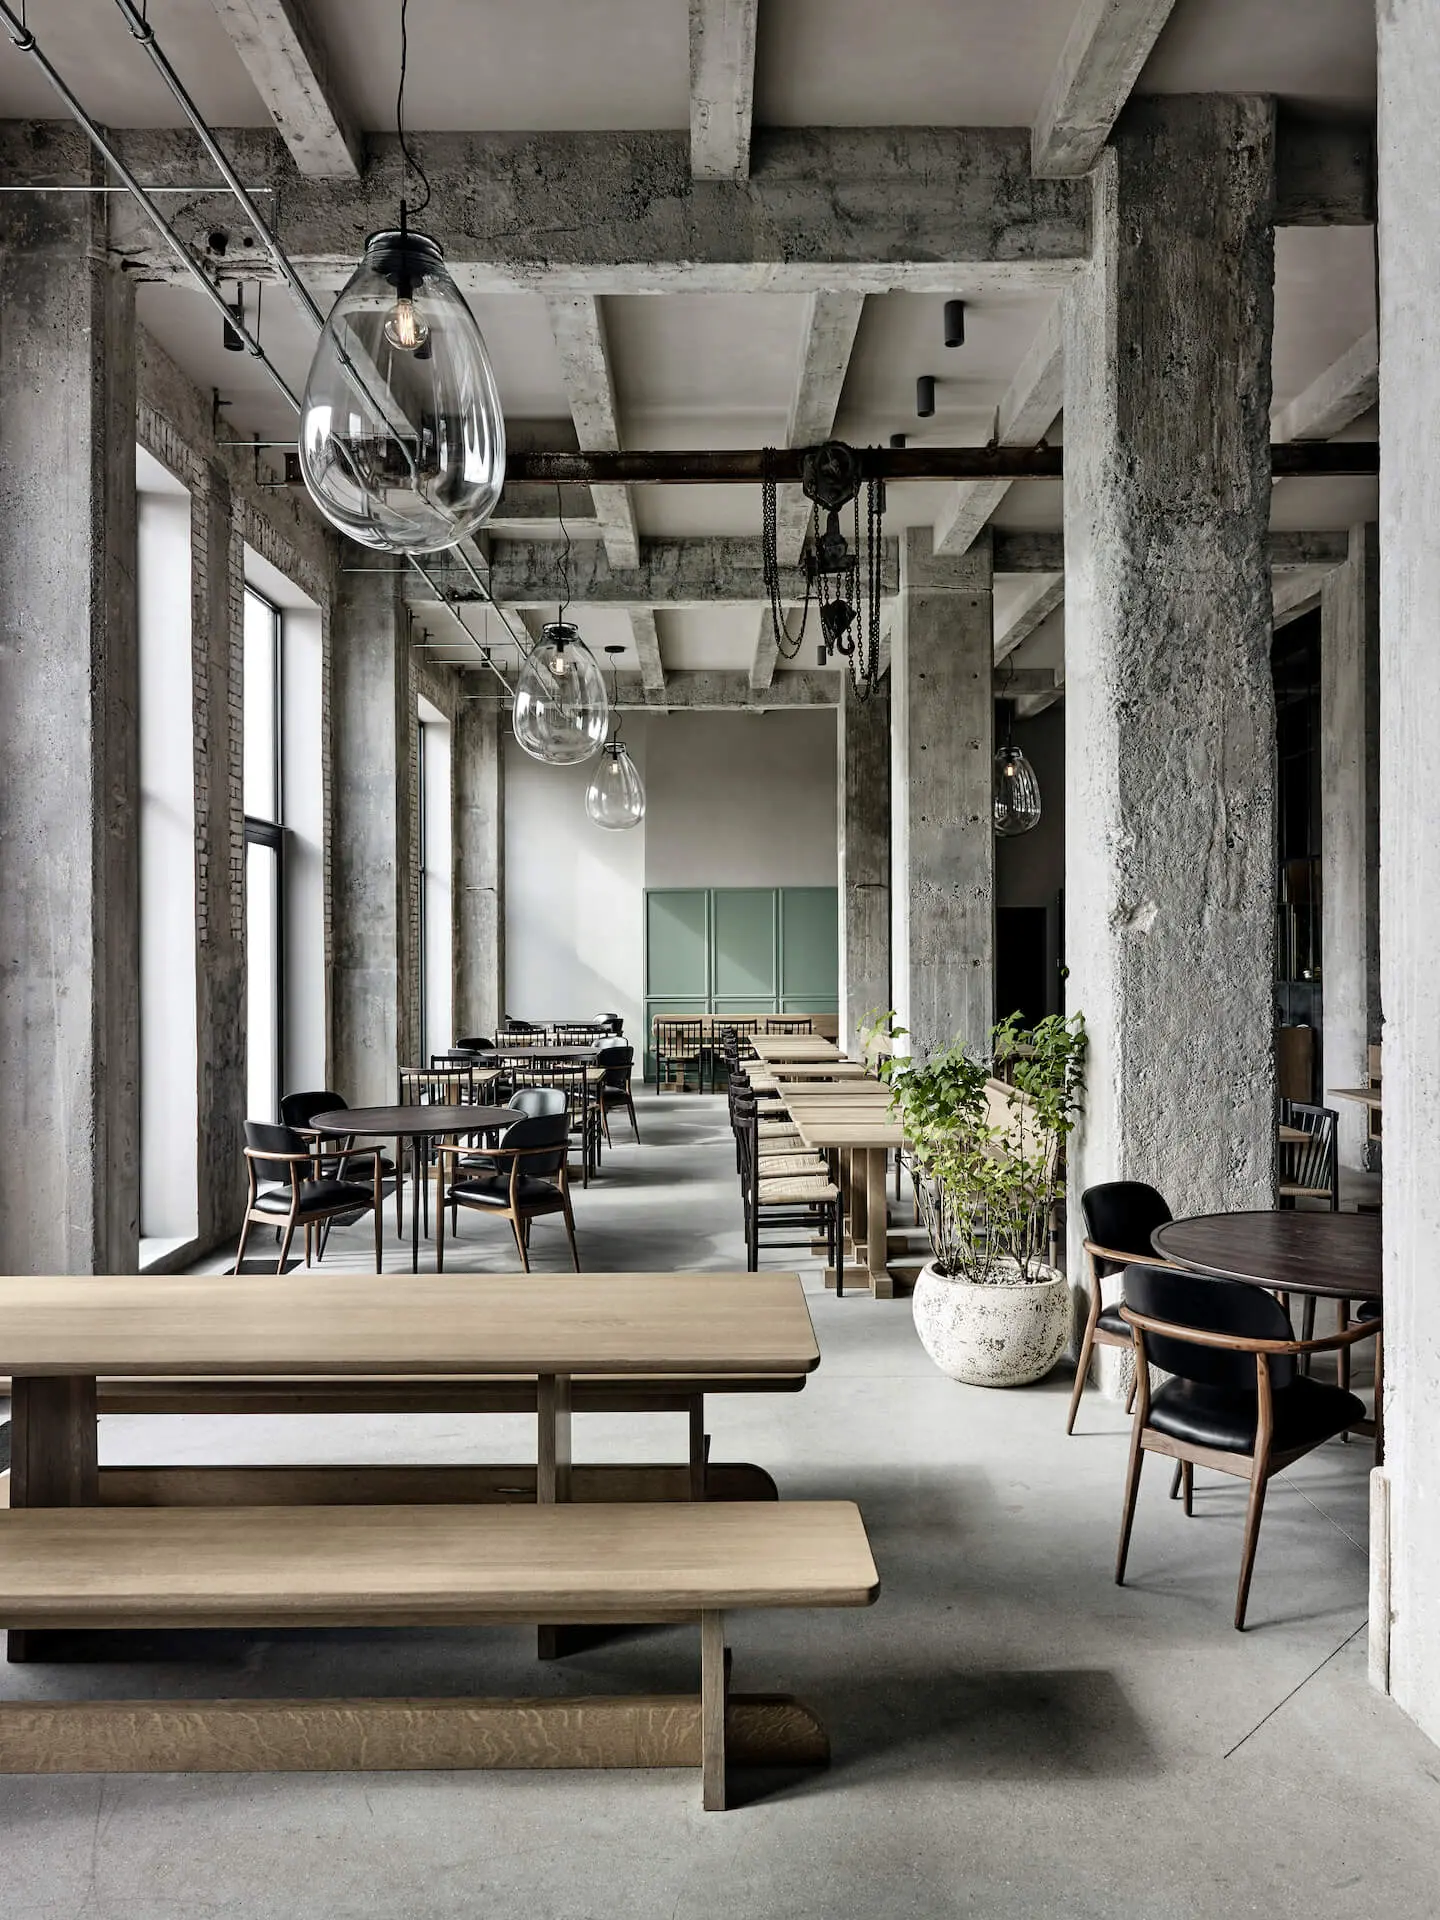 Space Copenhagen - interior space cafeteria 1